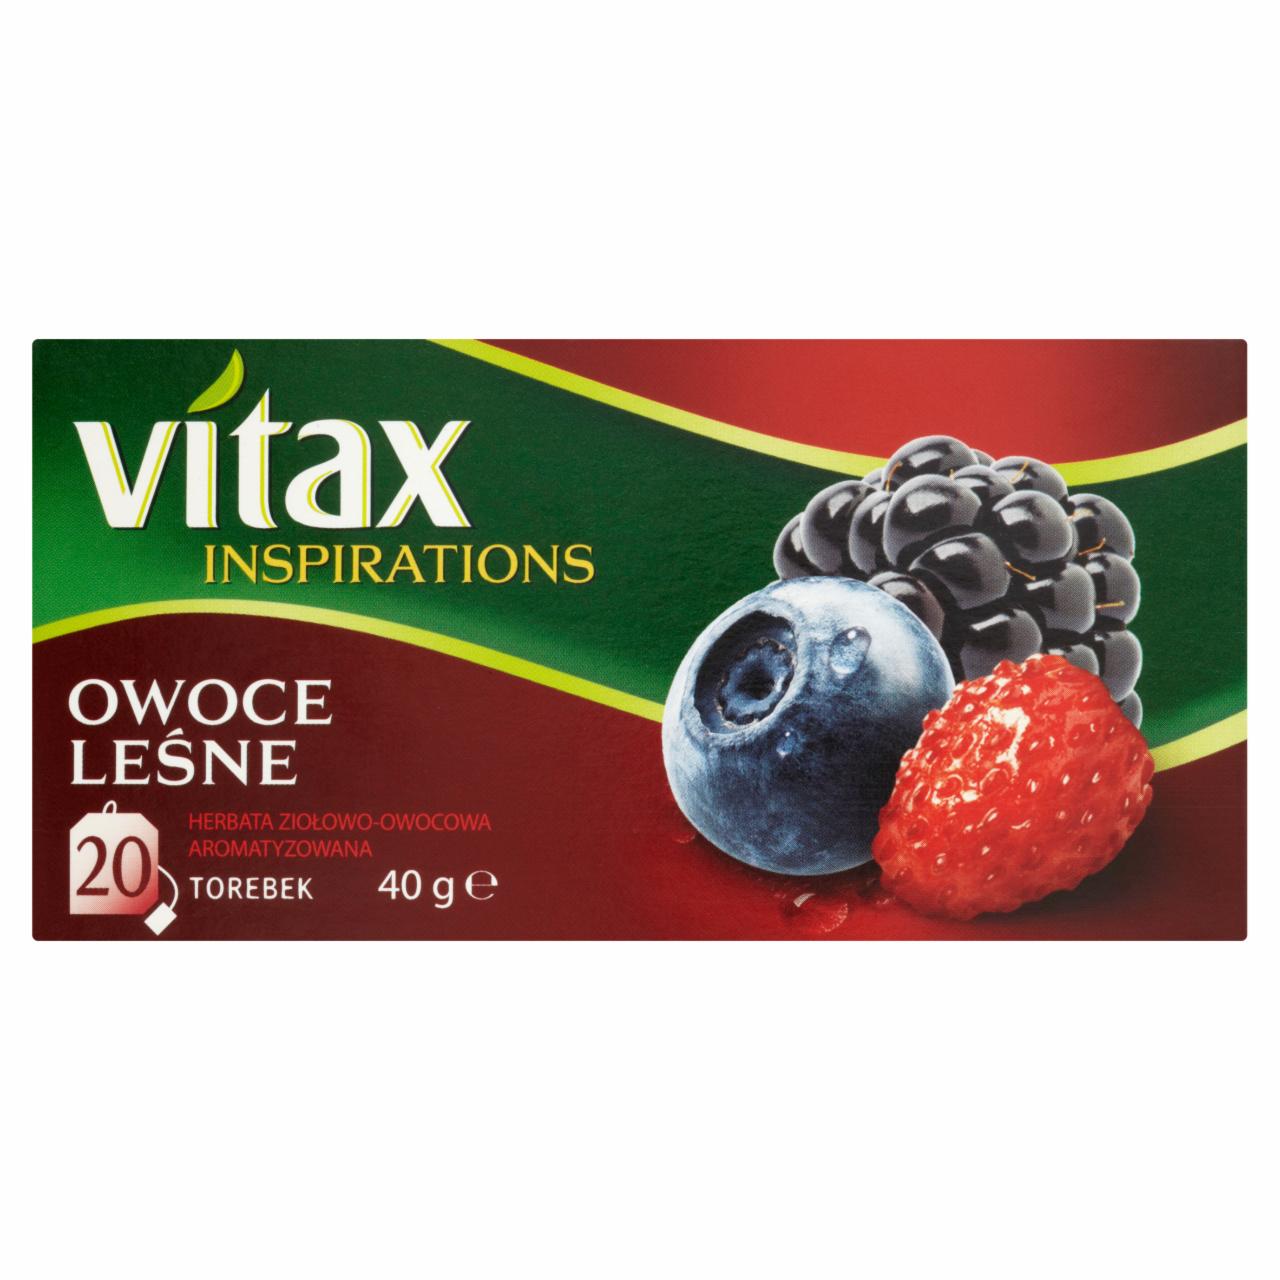 Zdjęcia - Vitax Inspirations Owoce leśne Herbata ziołowo-owocowa 40 g (20 torebek)